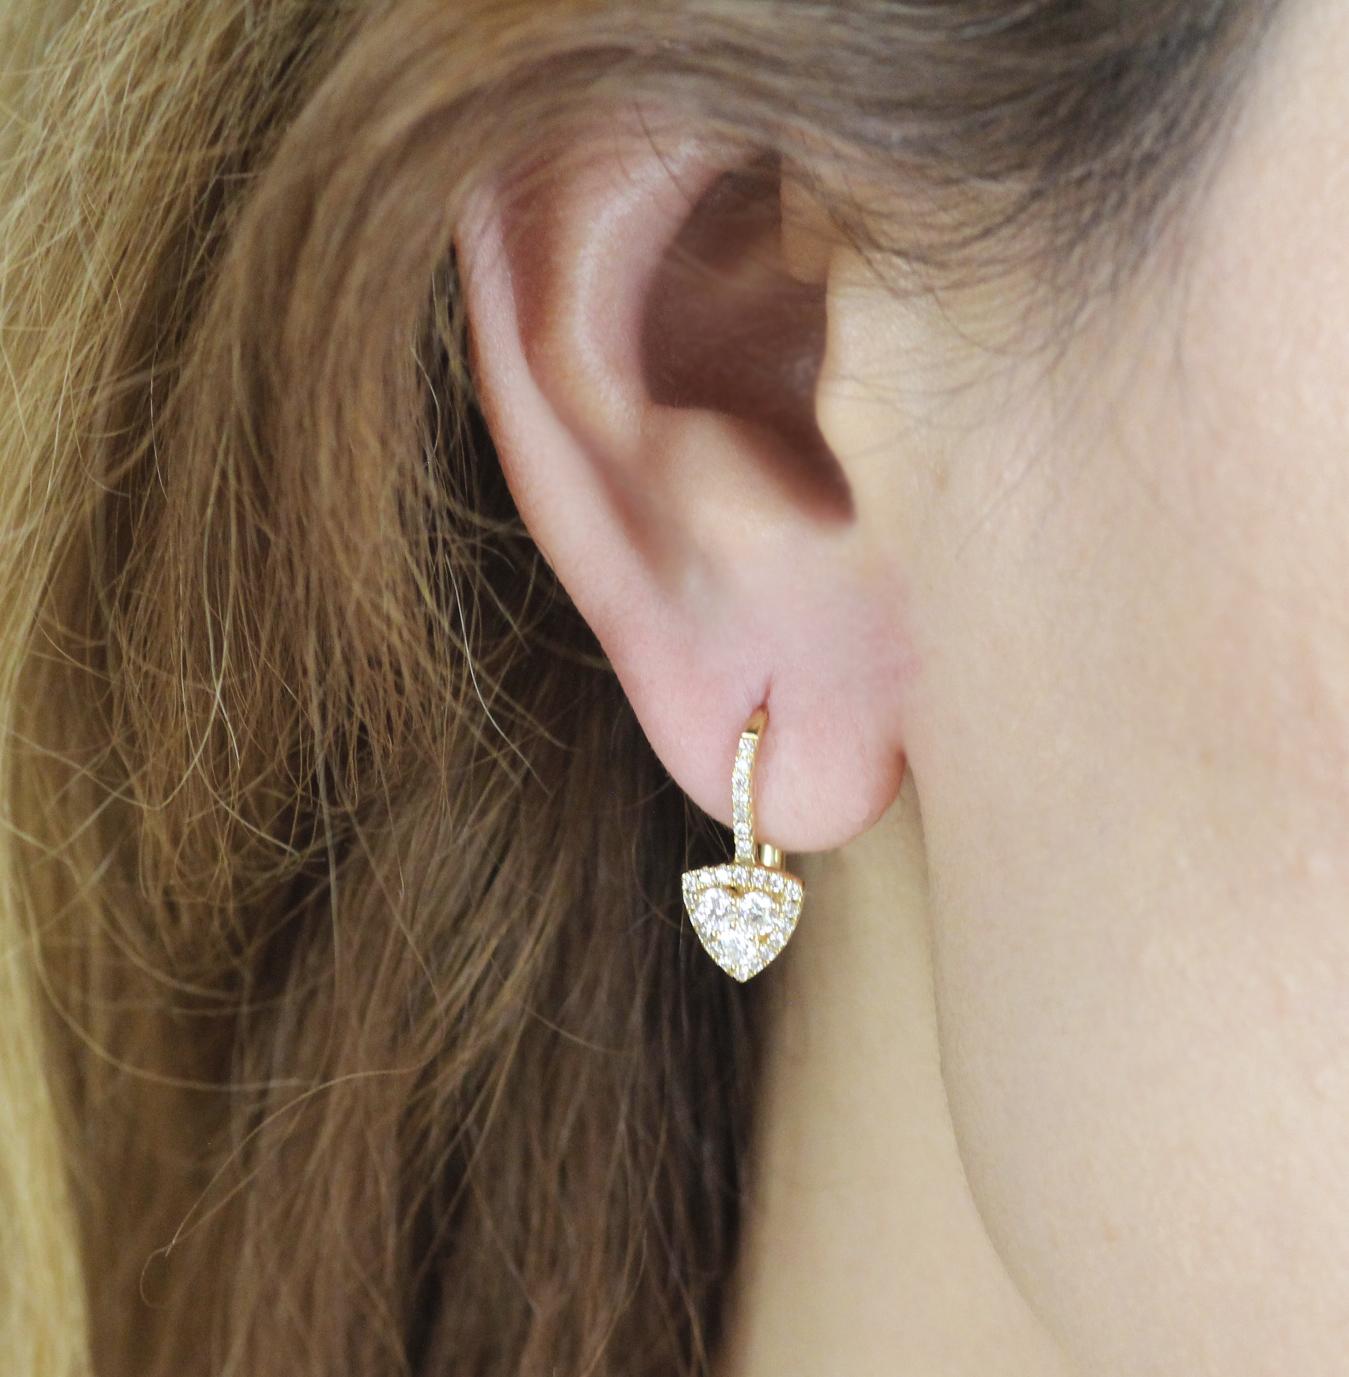 Paire de boucles d'oreilles contemporaines à motif trillion serties de diamants blancs ronds de taille brillant et montées sur de l'or jaune 18ct.

De conception moderne, les trois brillants ronds centraux mesurent 2,7 mm de diamètre et brillent à